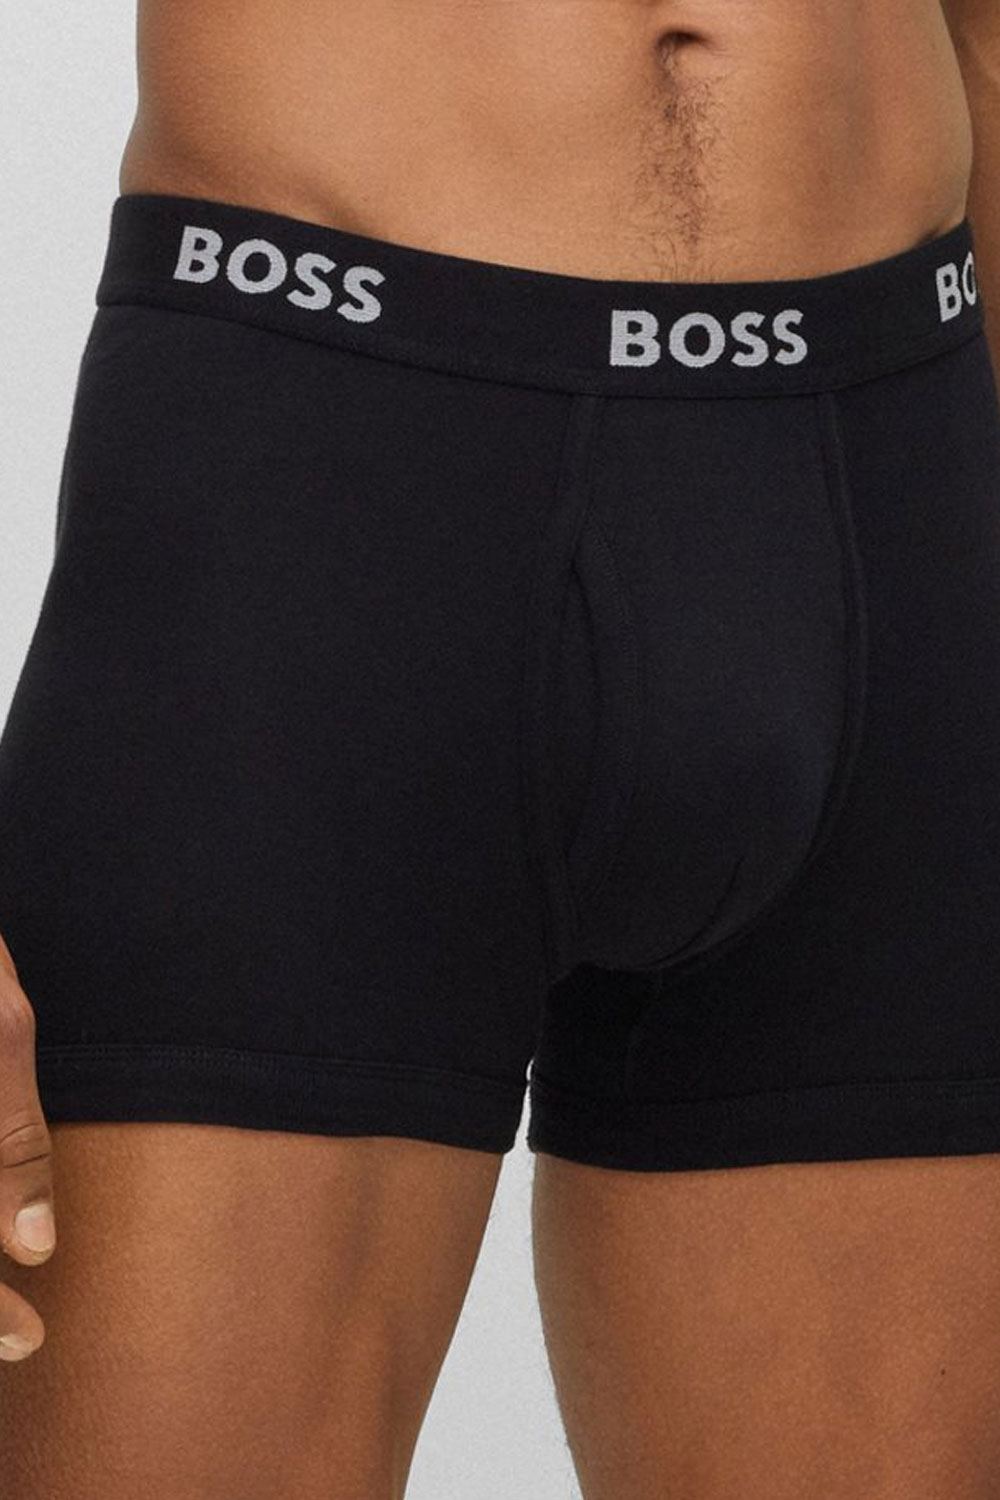 Hugo Boss boxershorts 5-pack zwart